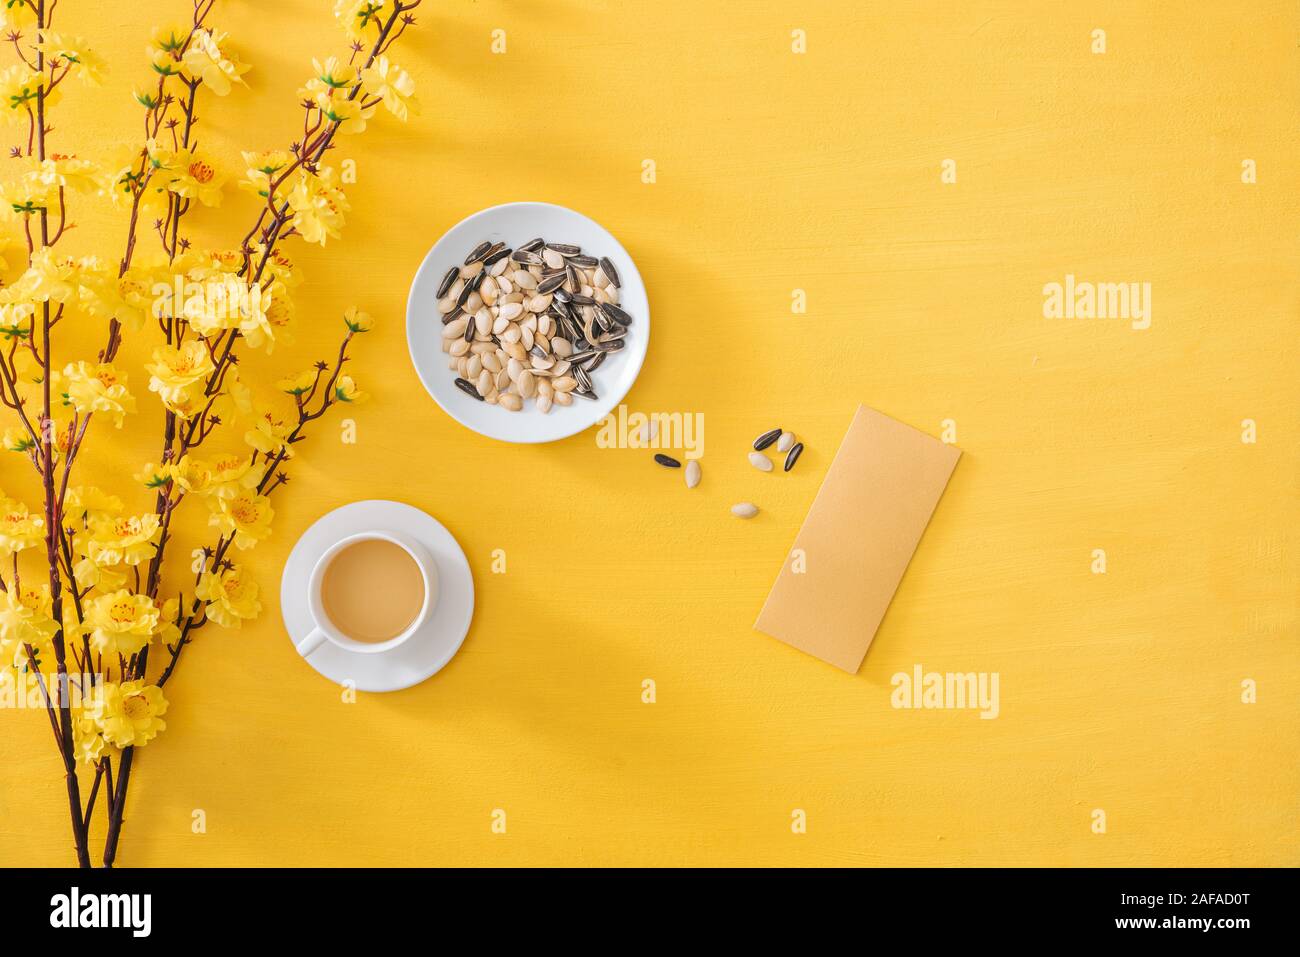 La décoration du Nouvel An chinois sur un fond d'or jaune Banque D'Images